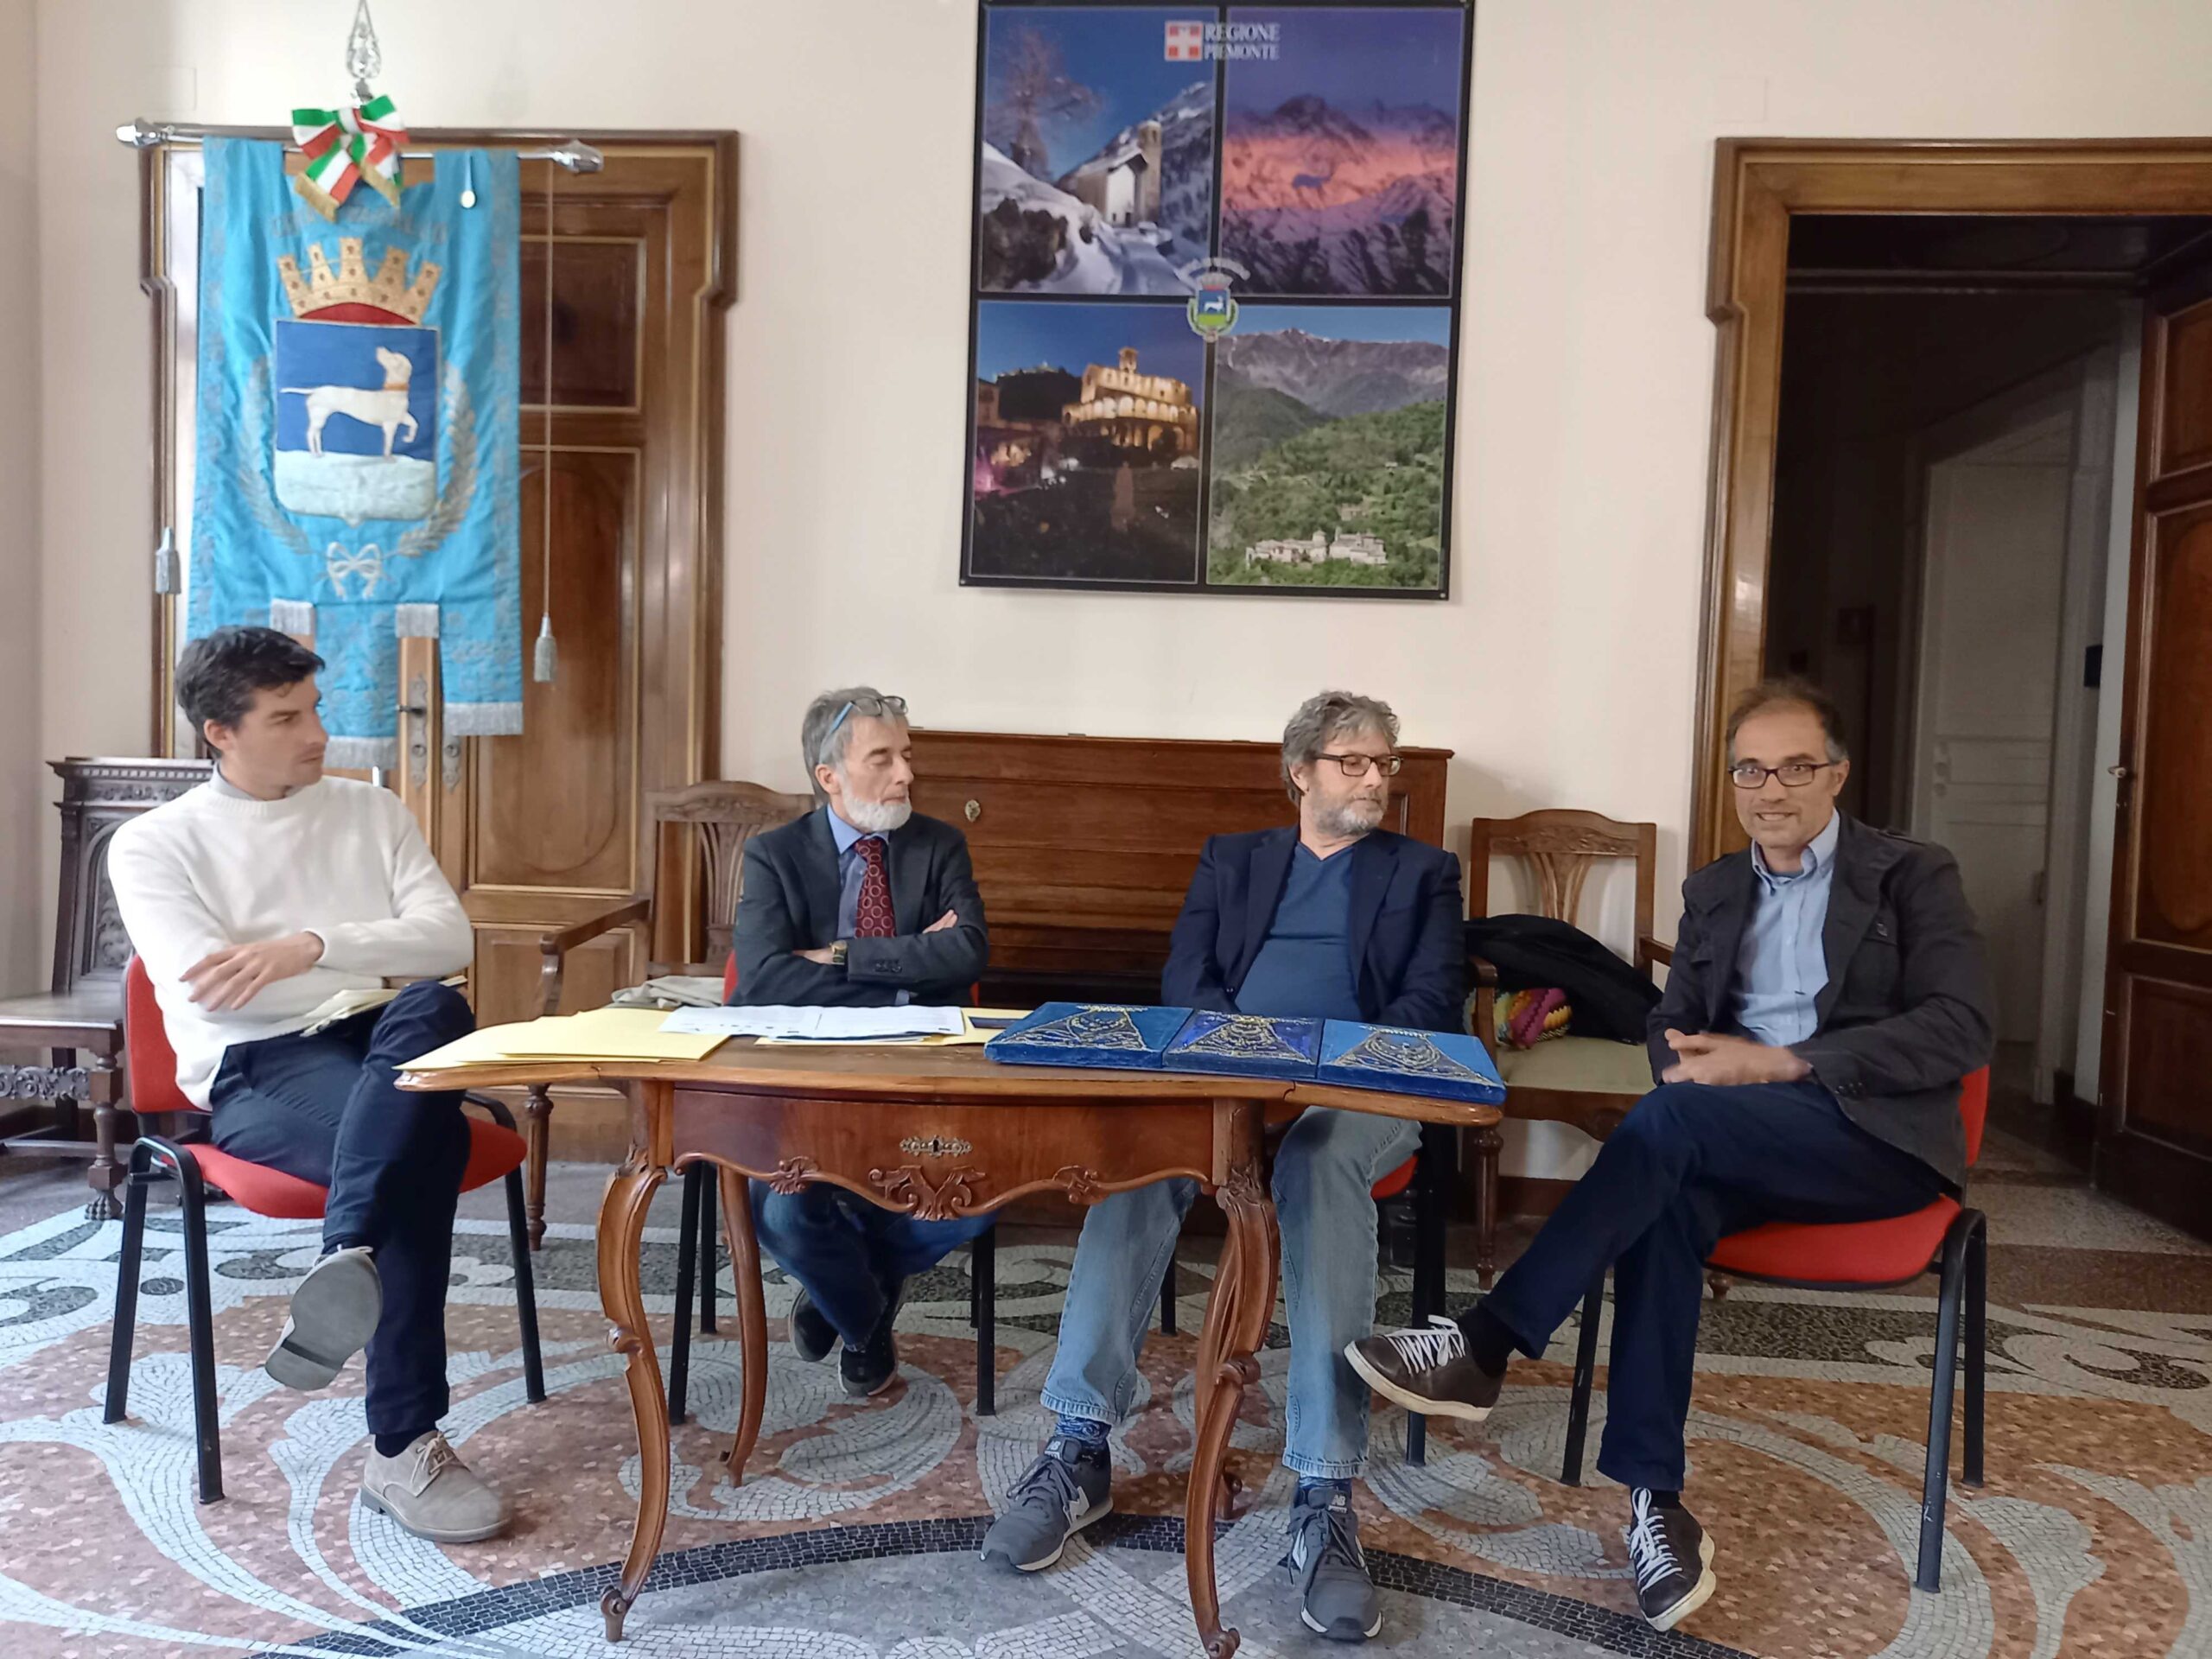 Presentato a Varallo il nuovo programma del Salotto IoTiAmo